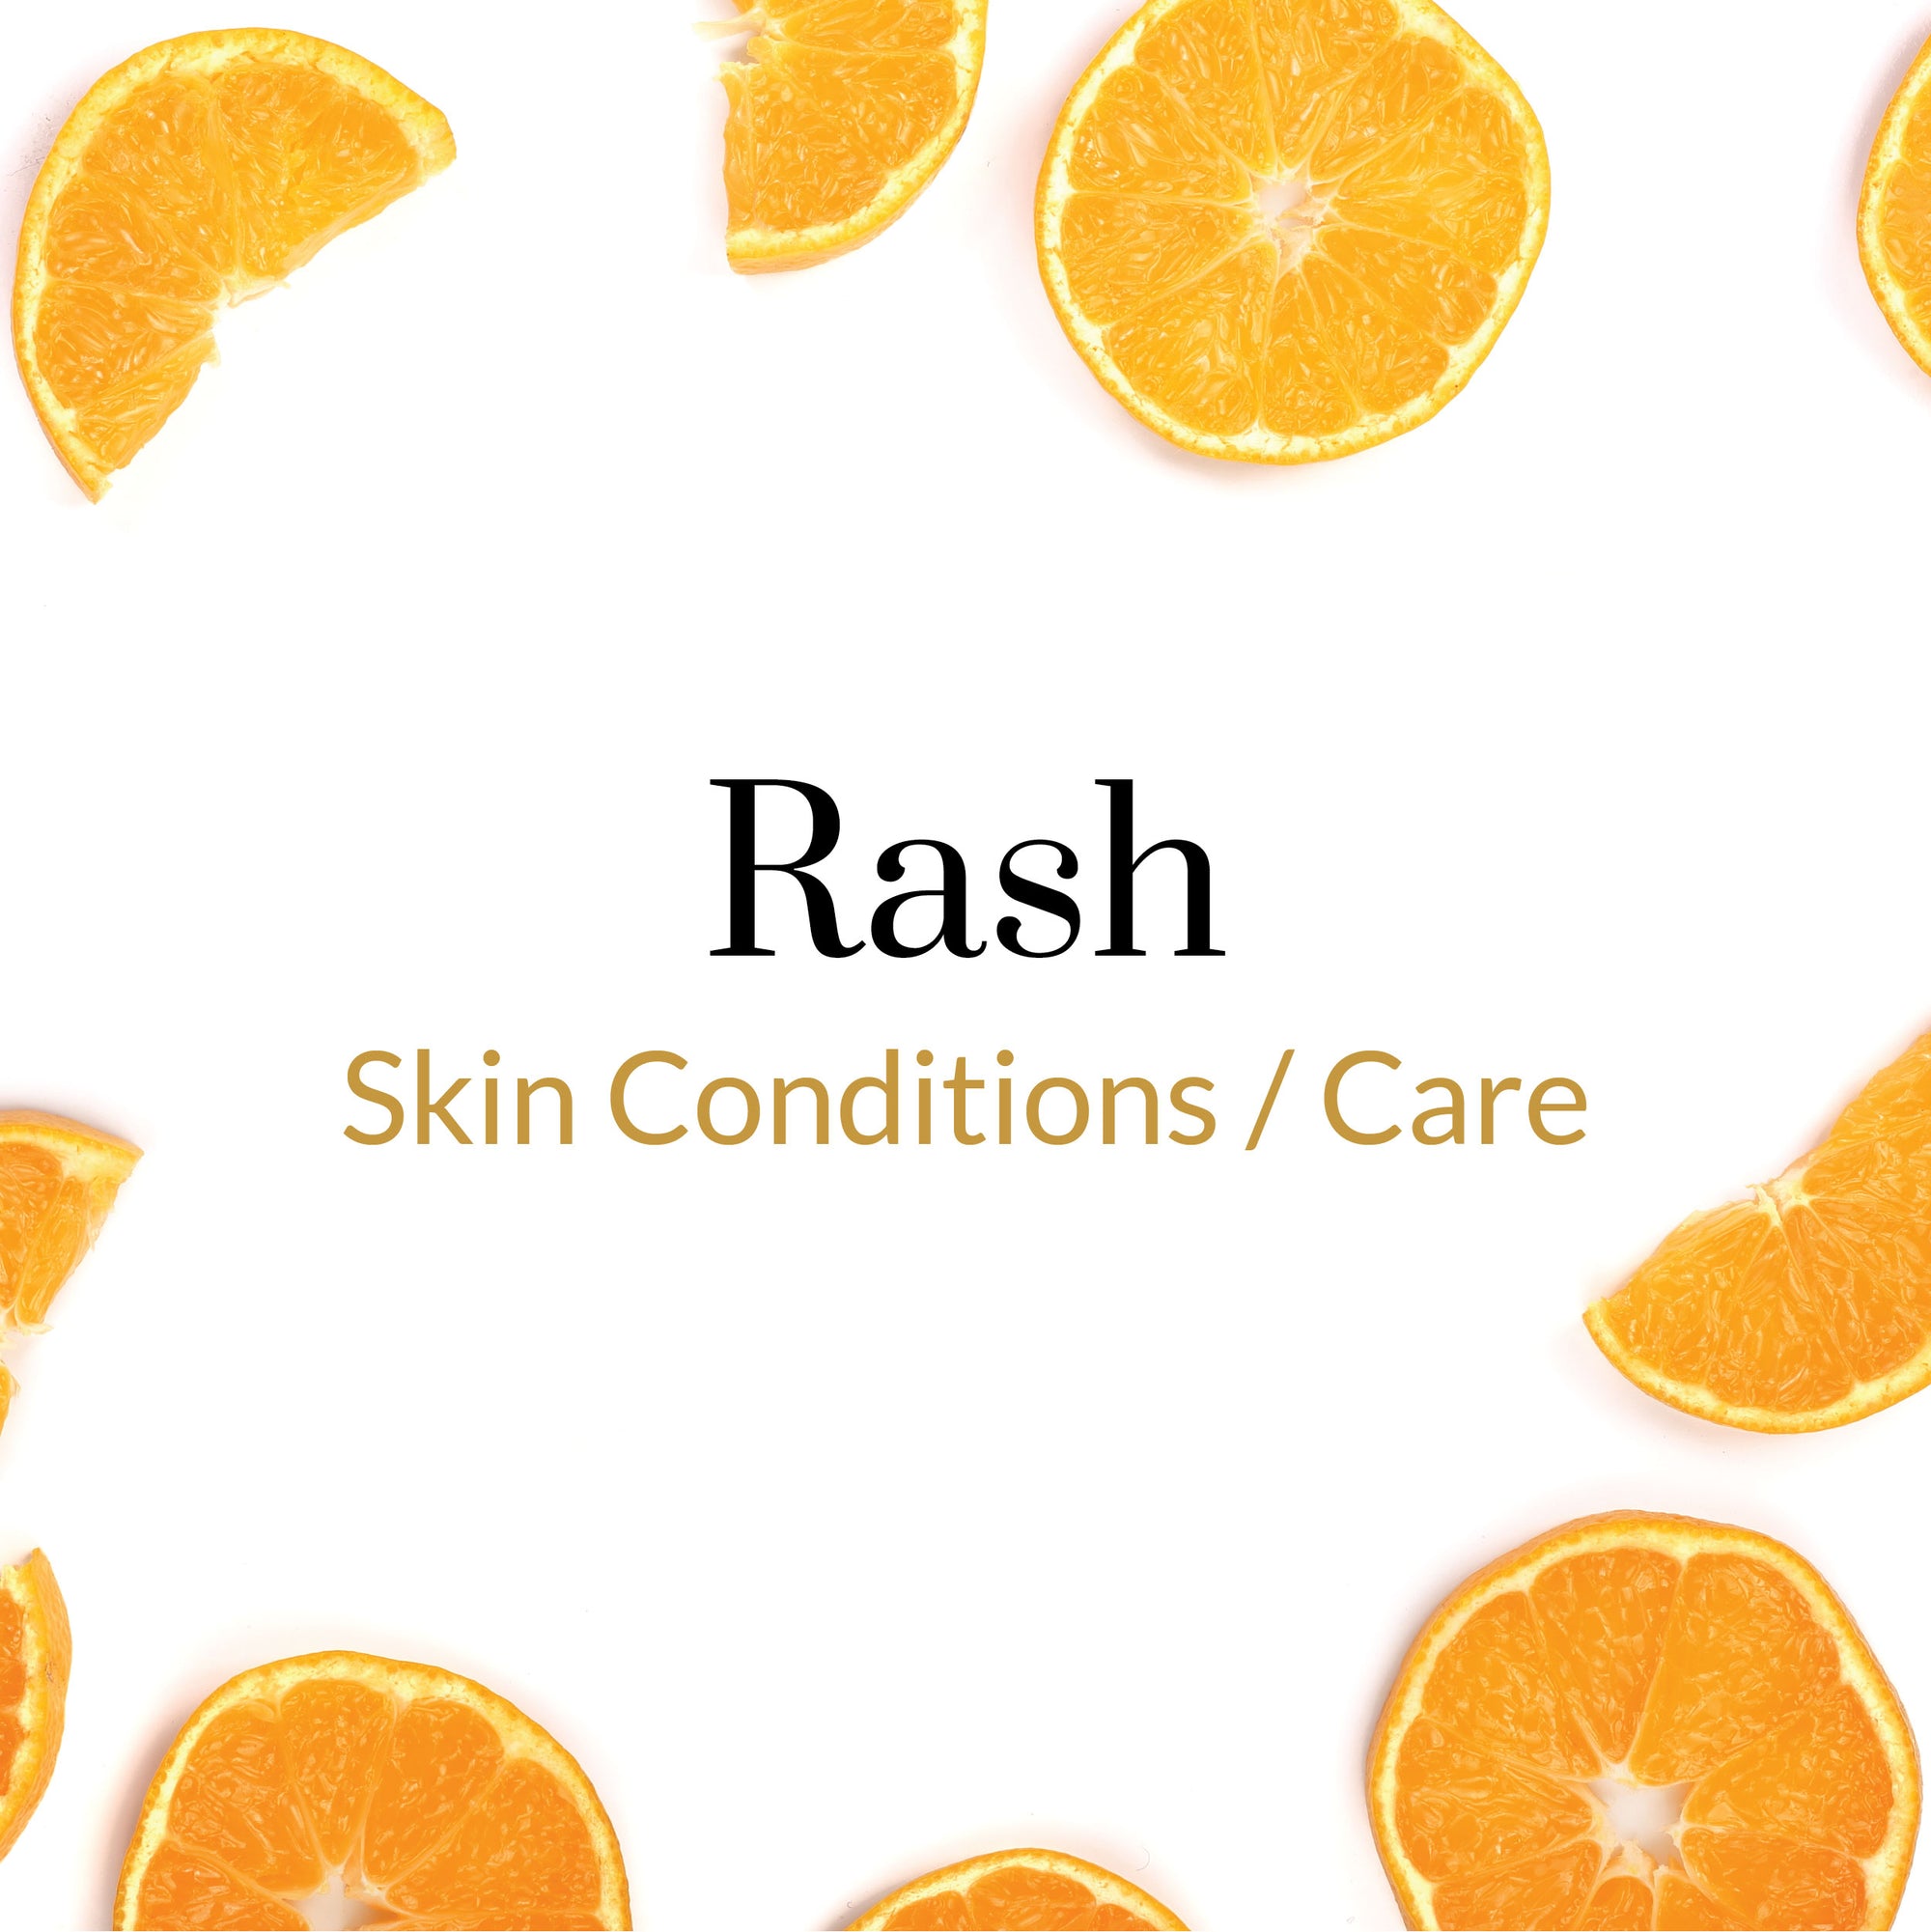 Skin Conditions/Care - Rash